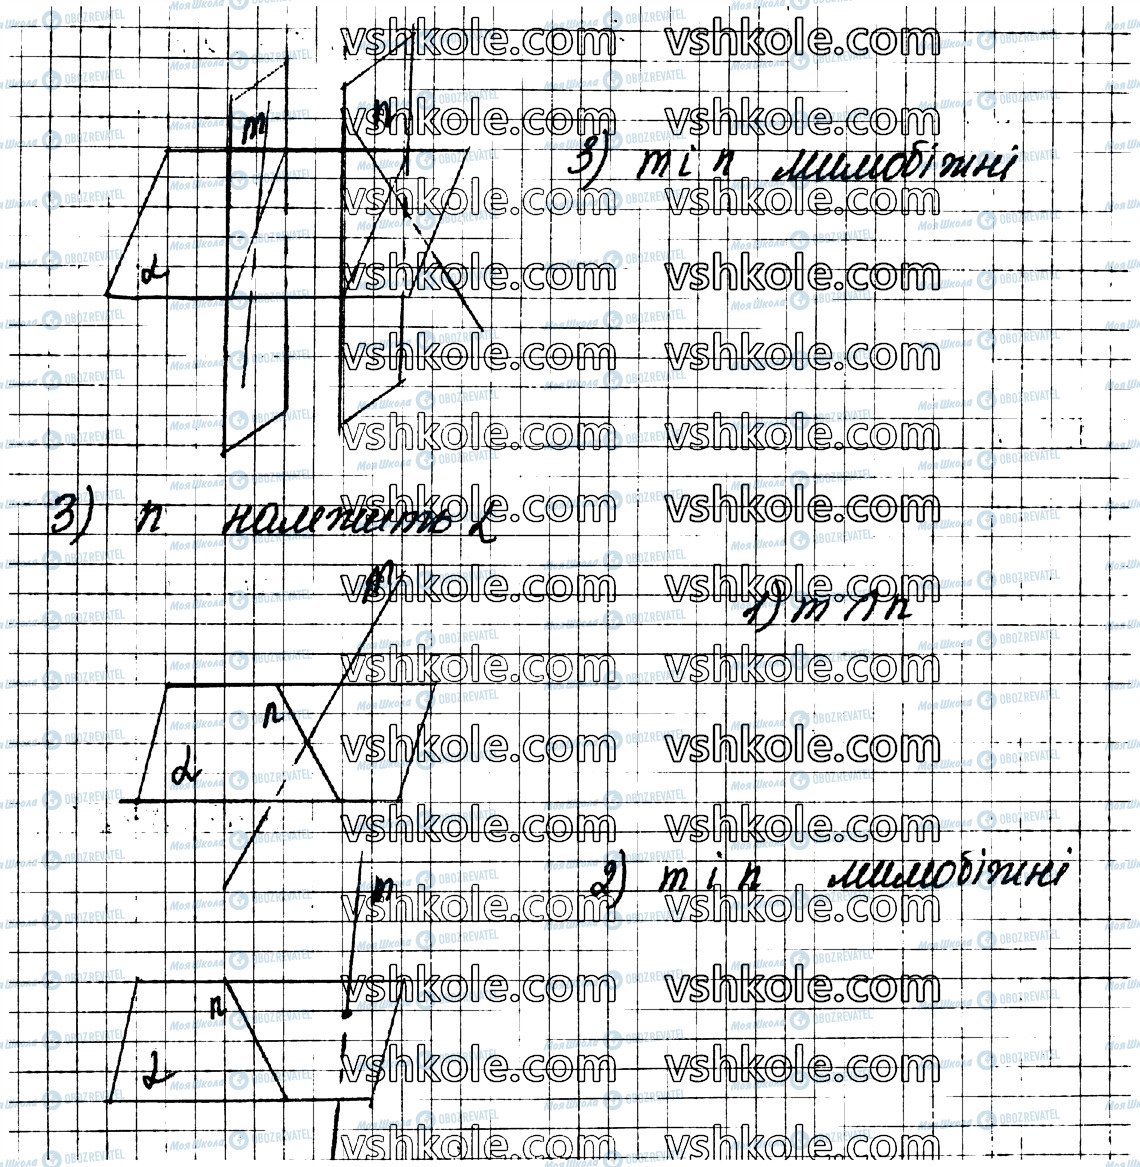 ГДЗ Геометрия 10 класс страница 14